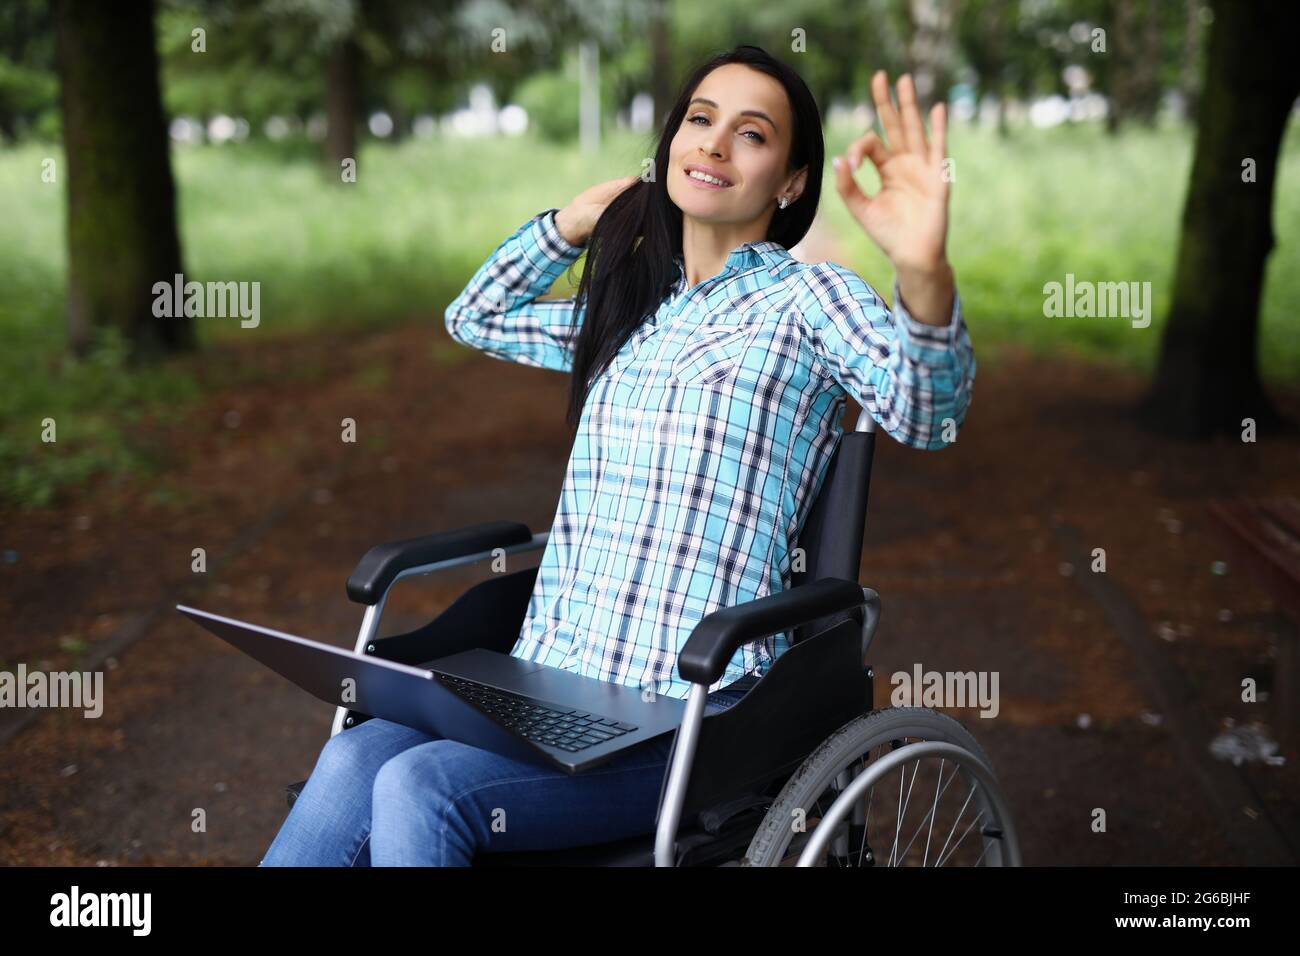 Eine behinderte Frau, die im Rollstuhl sitzt und einen Laptop auf ihrem Schoß hat und eine Geste zeigt, die in Ordnung ist Stockfoto